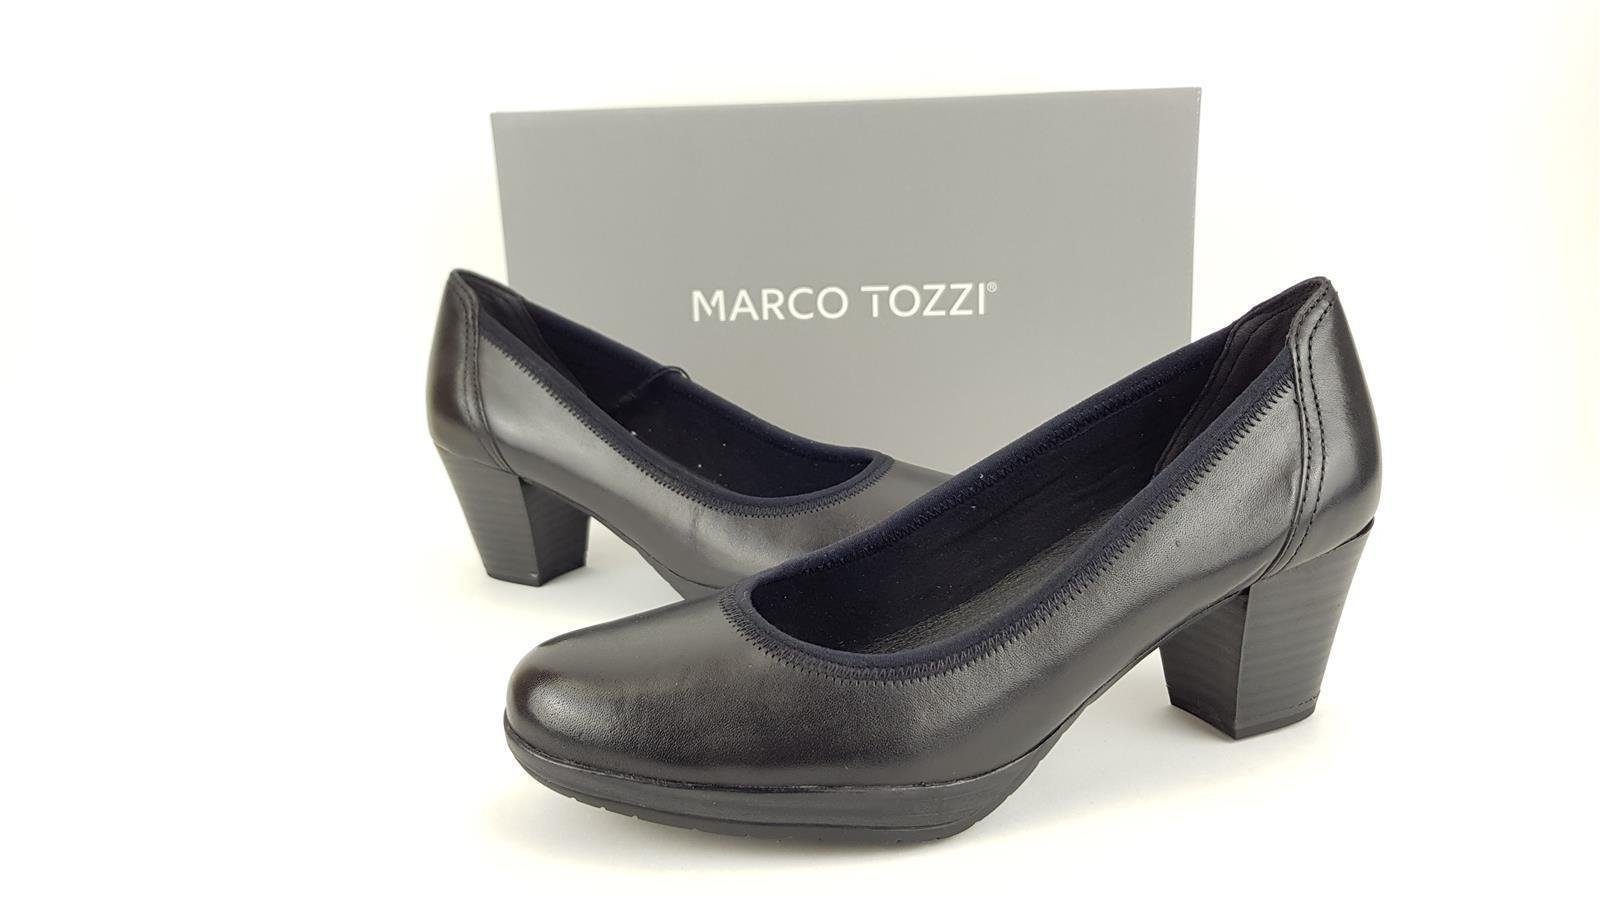 MARCO TOZZI Marco Tozzi Damen Plateau Pumps schwarz, 4,5 cm Absatz Pumps